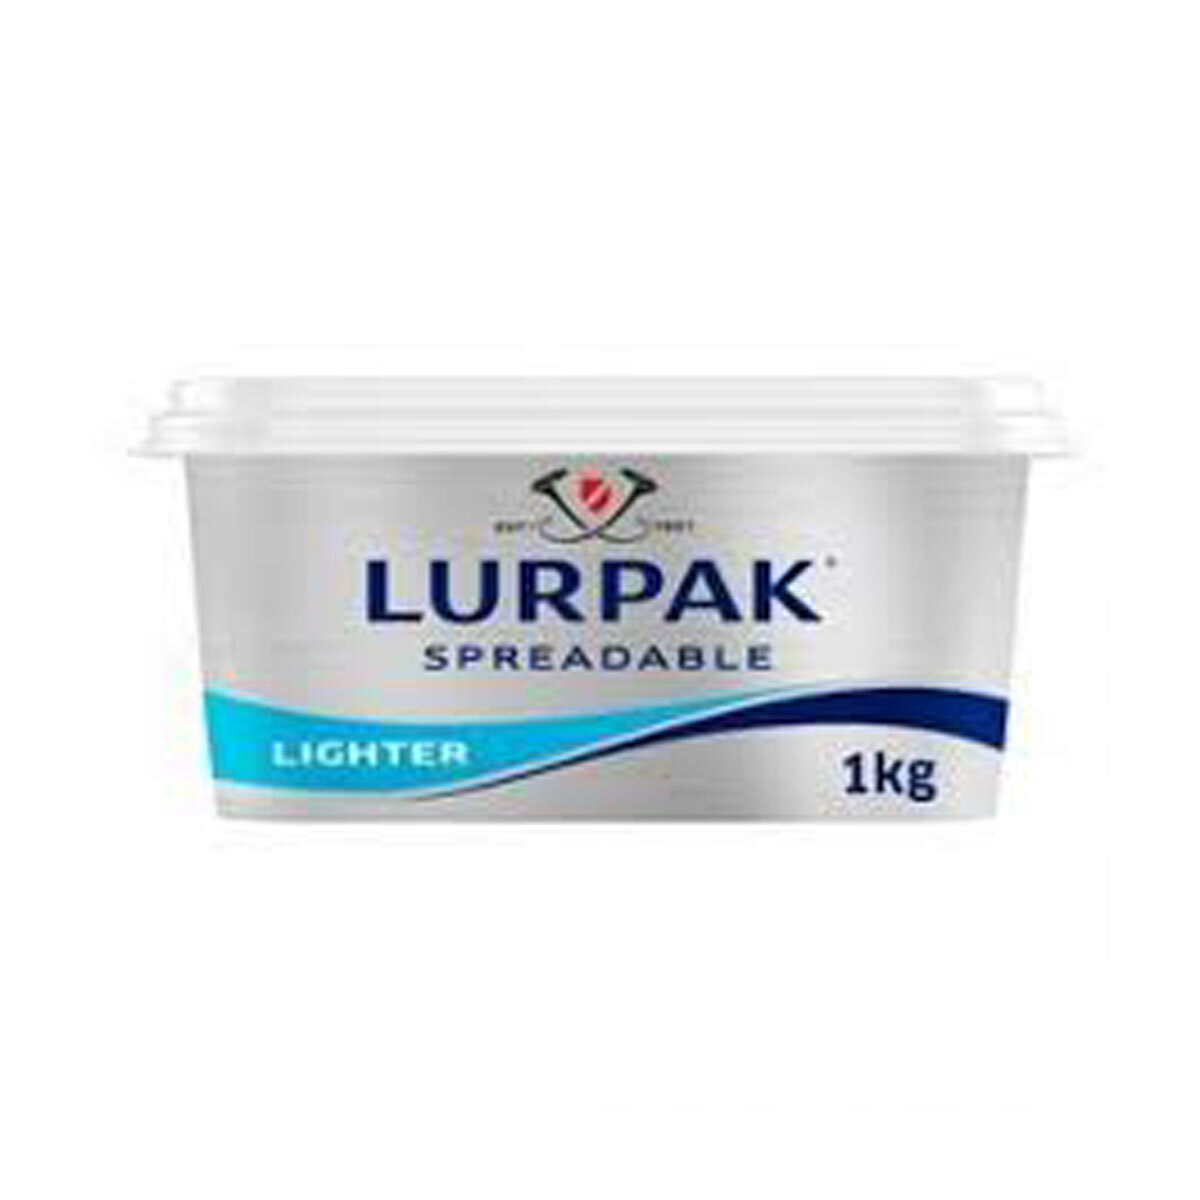 Lurpak Spreadable, 1kg Costco UK